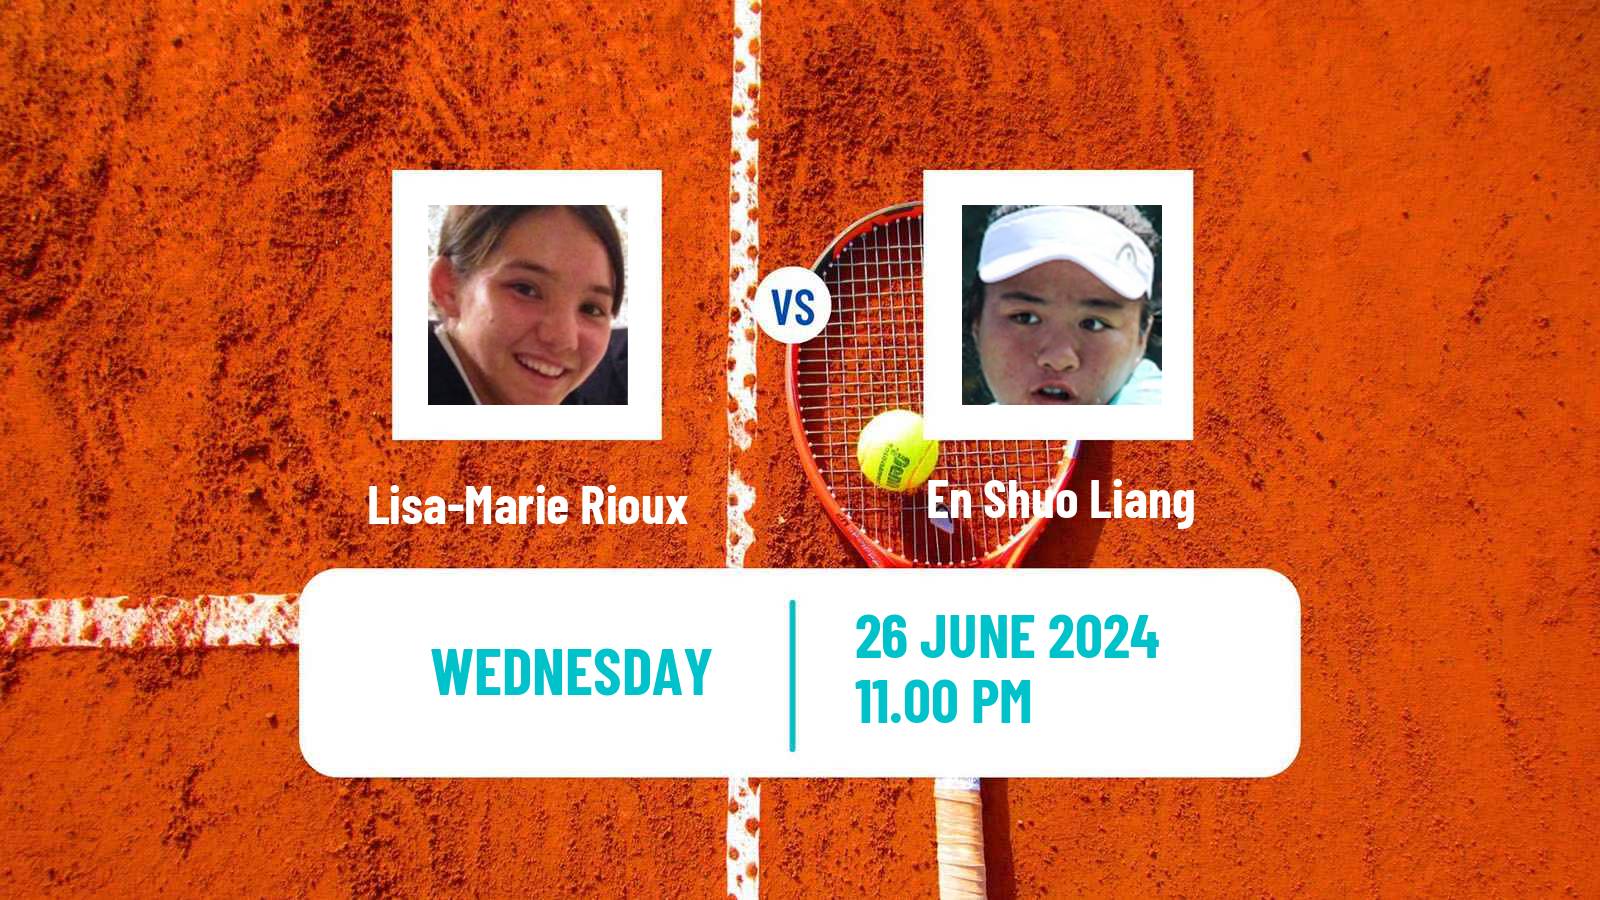 Tennis ITF W35 Taipei 2 Women Lisa-Marie Rioux - En Shuo Liang